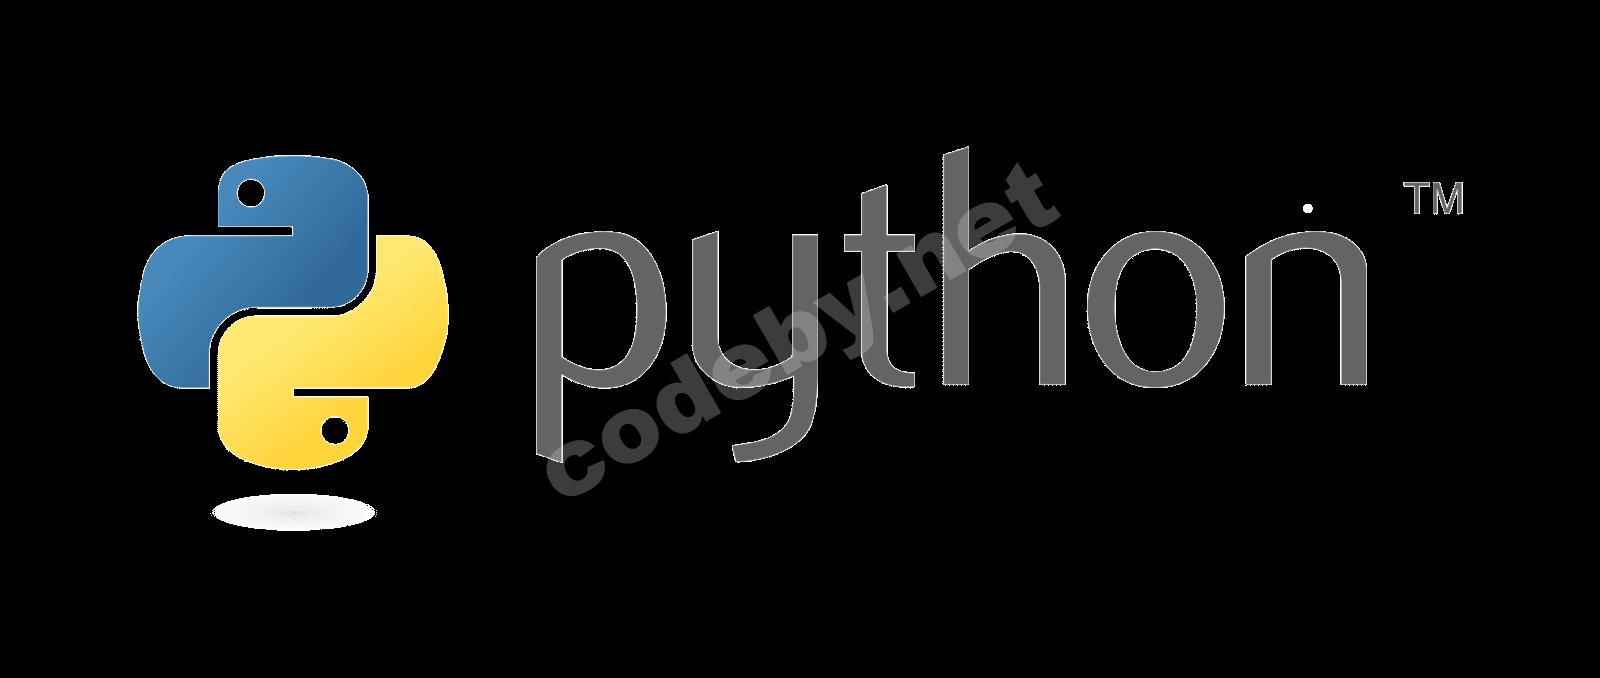 Python_logo.png